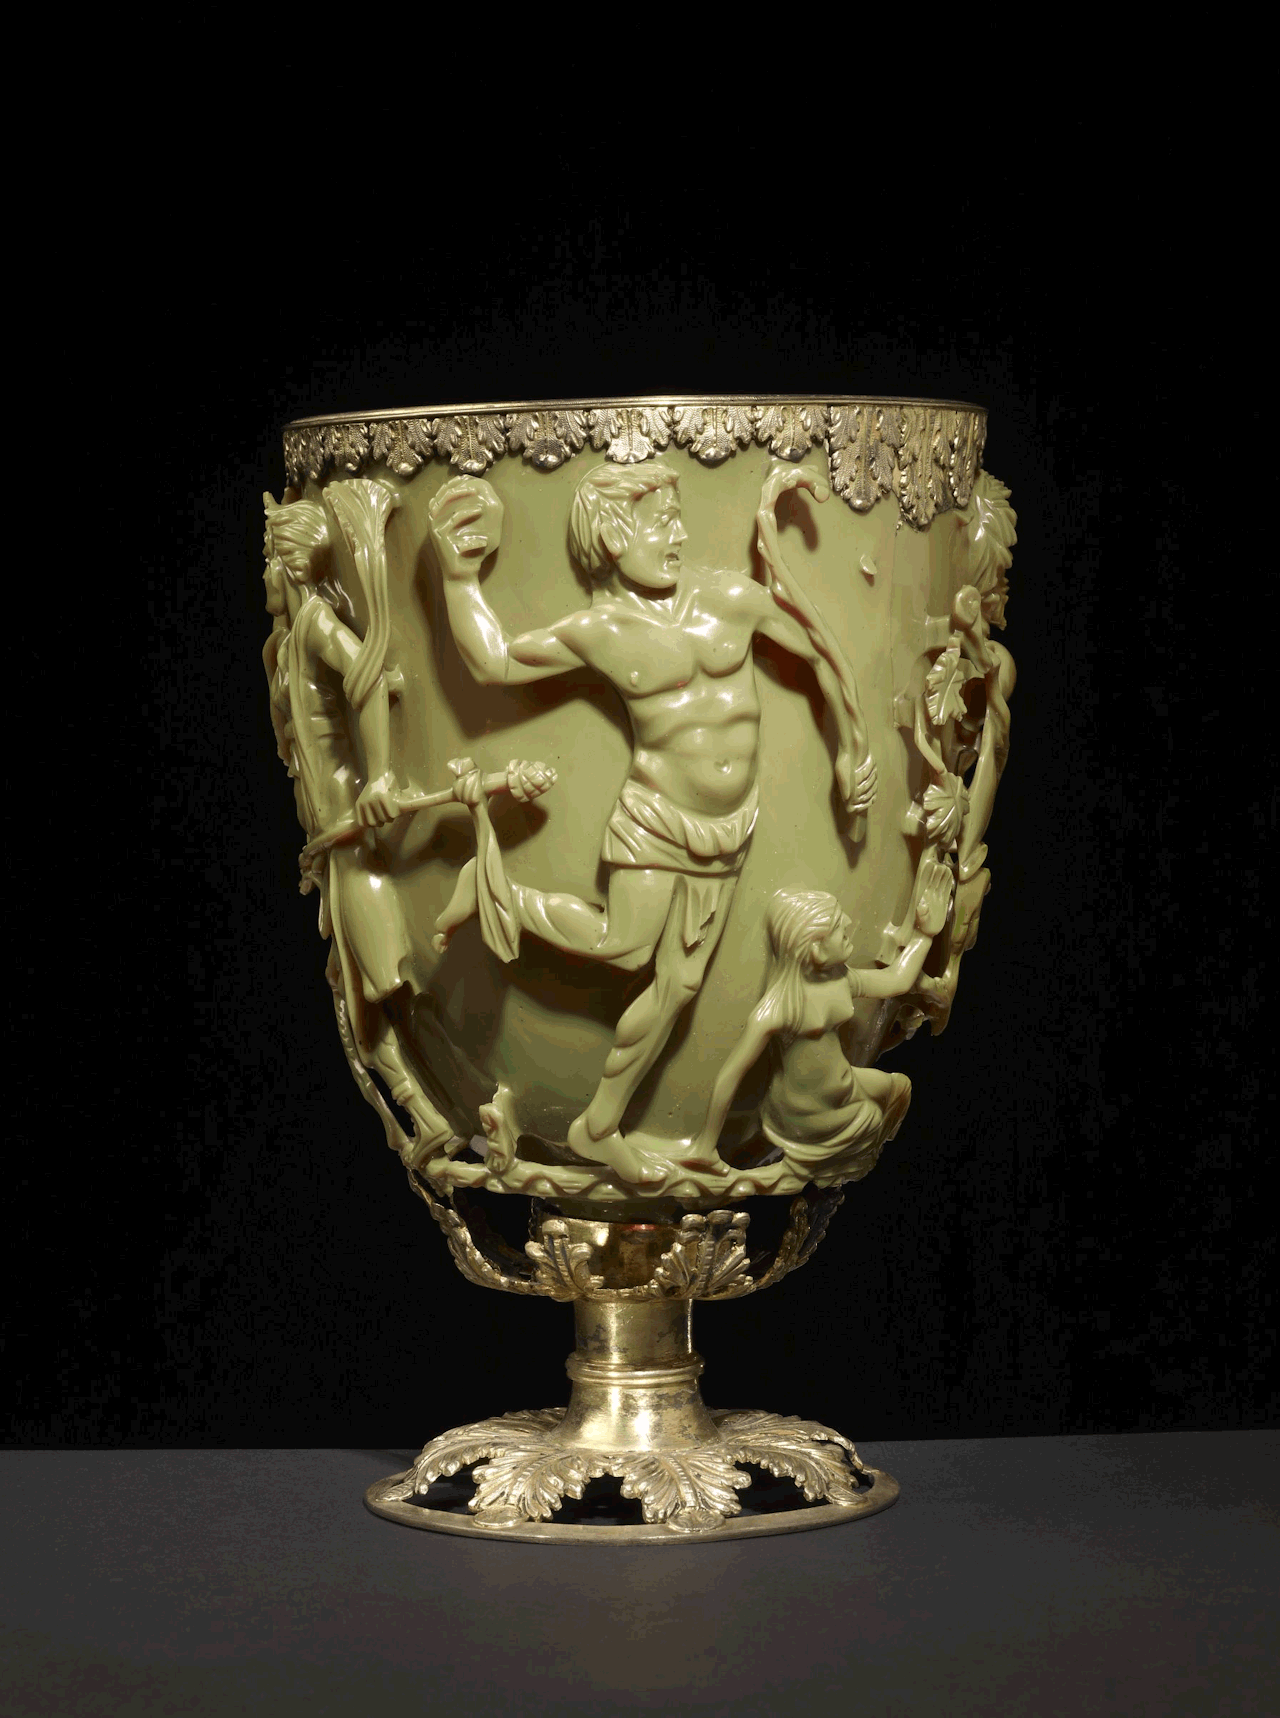 Roman Lycurgus Cup je 1,600 let starý nefritově zelený římský kalich. Když do něj vložíte zdroj světla, magicky to změní barvu. Při osvětlení zepředu se jeví jako nefritově zelená, při osvětlení zezadu nebo zevnitř krvavě červená.